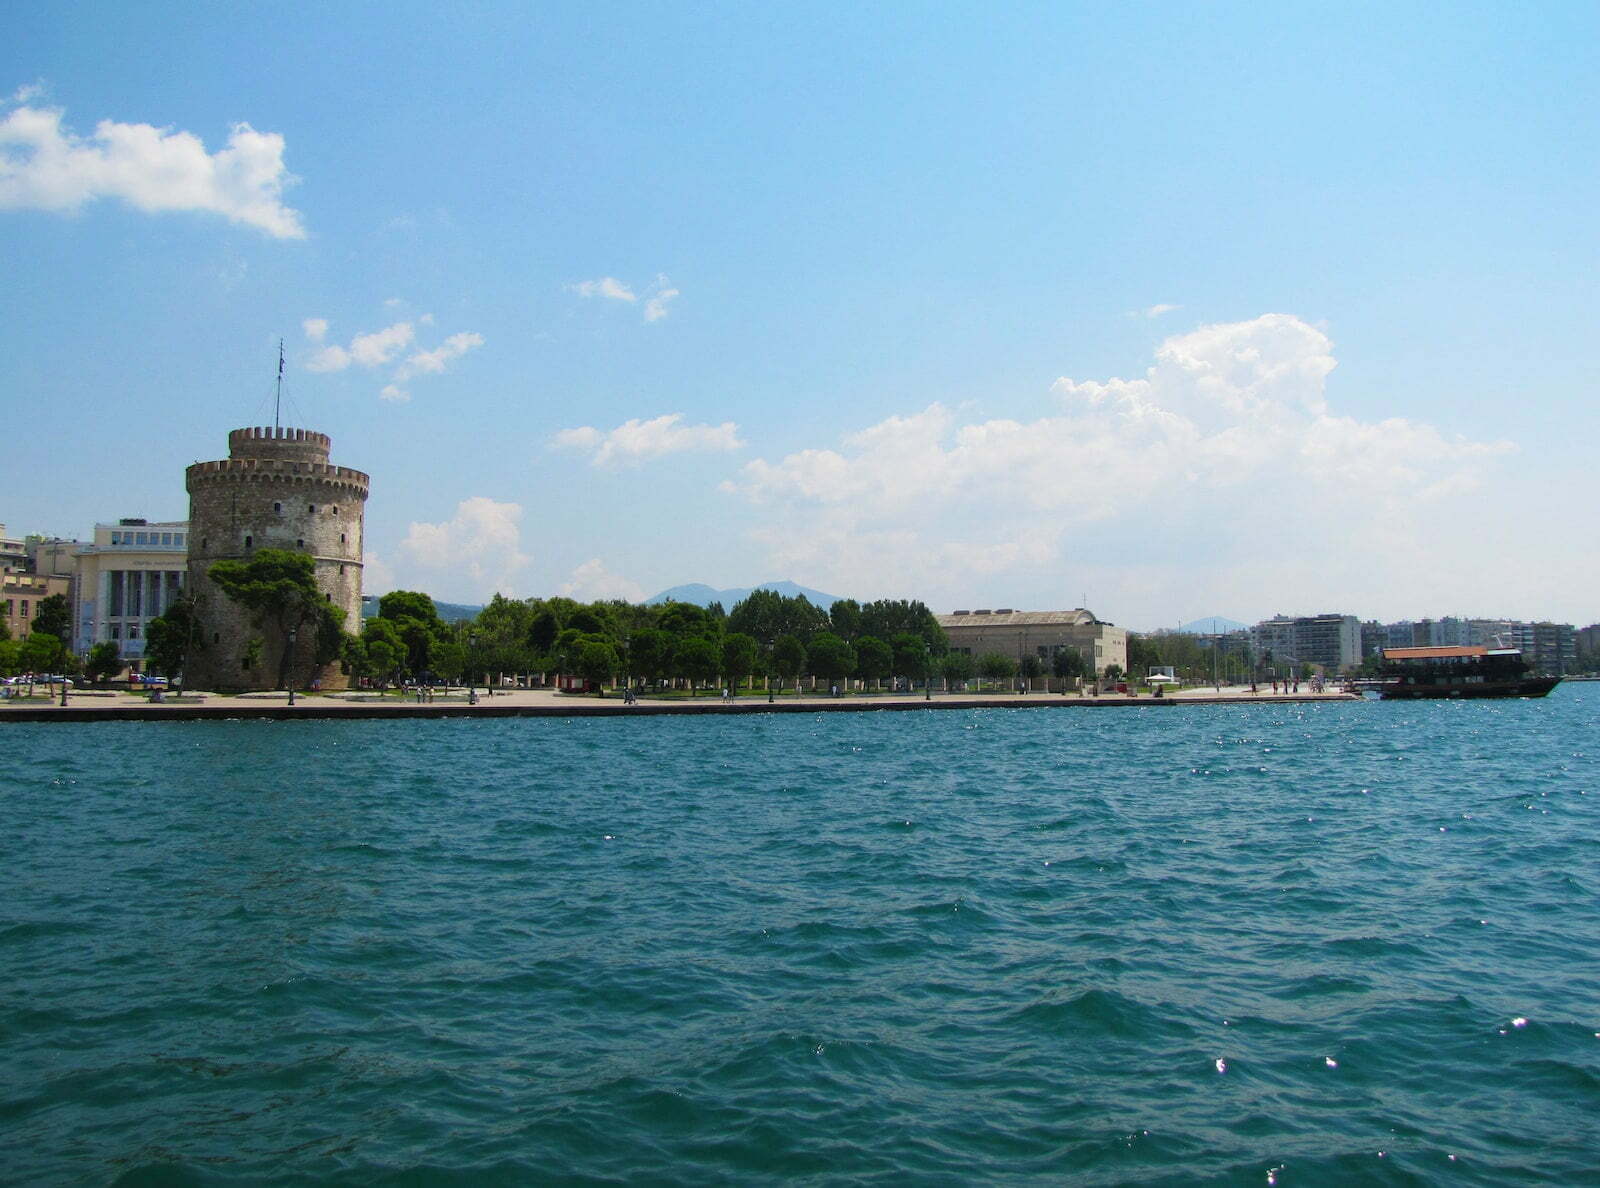 Best Restaurants in Thessaloniki